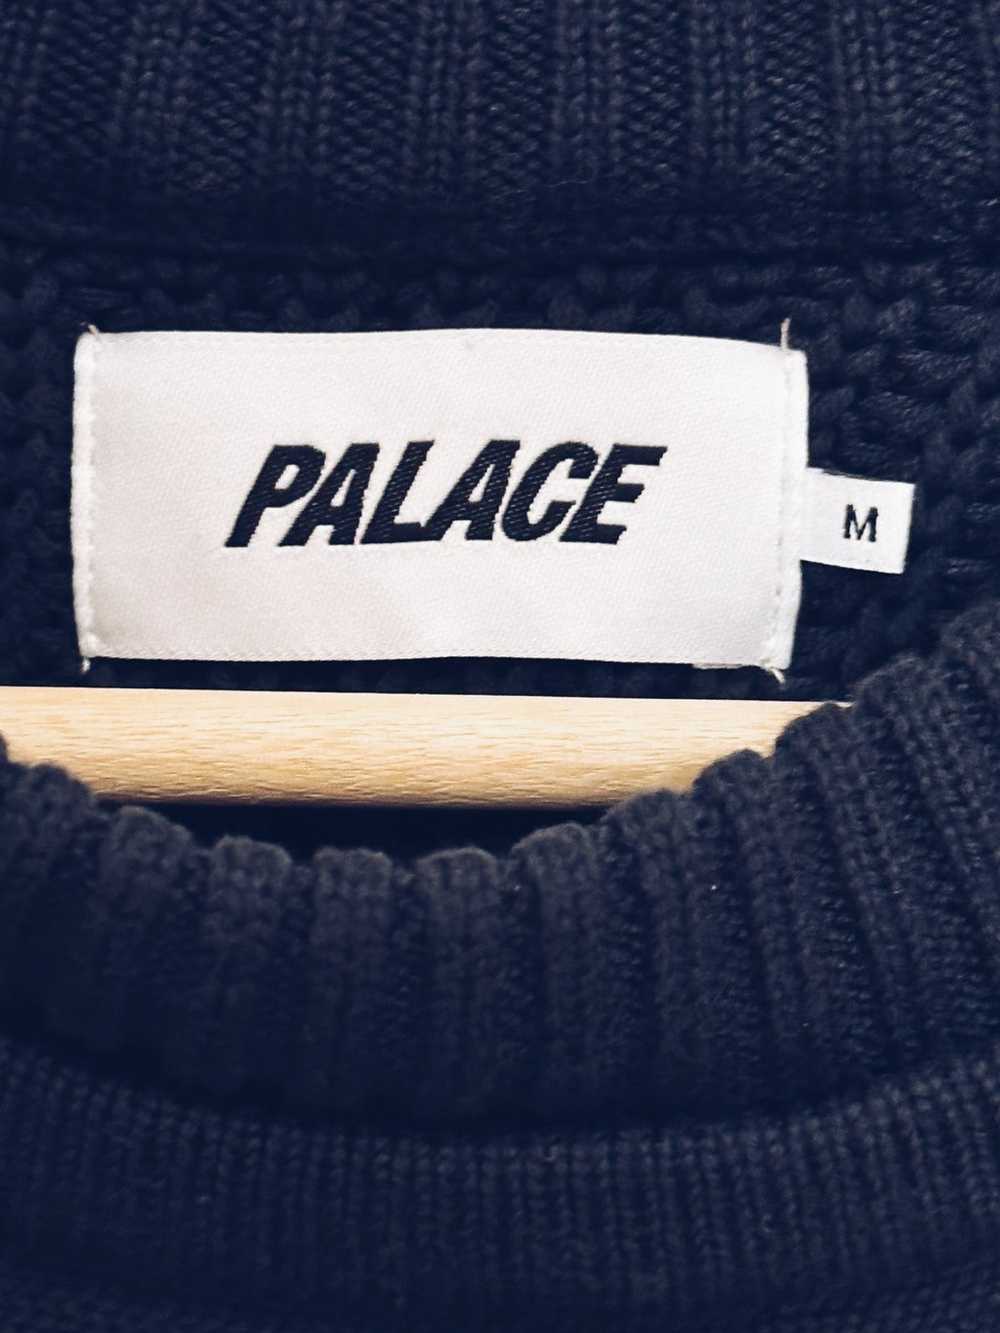 Palace Palace Thick Chunk Knit Sweater - image 4